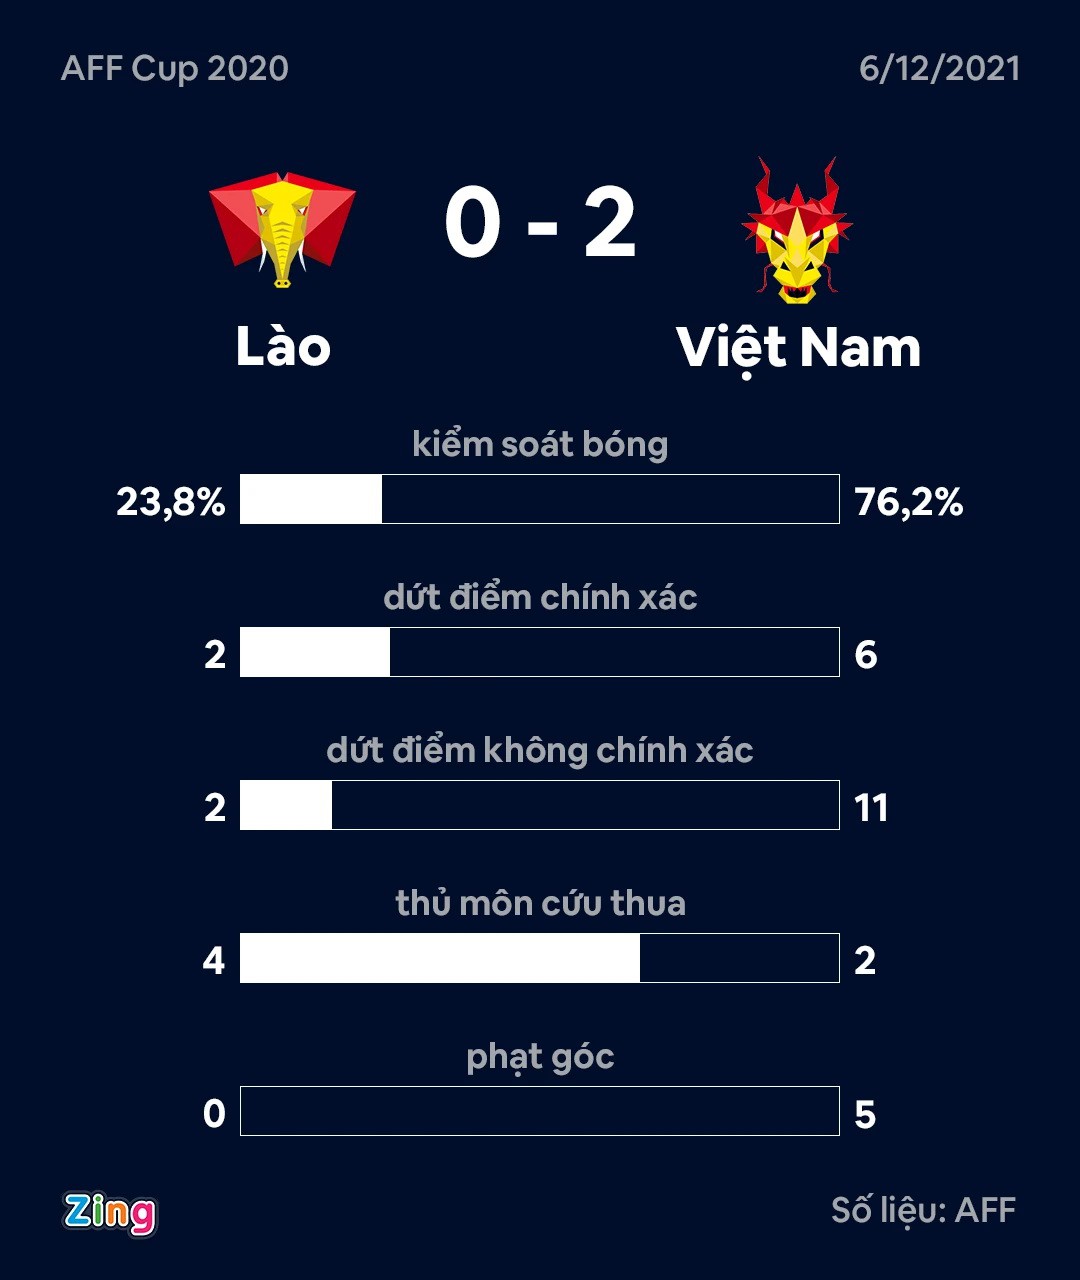 Vì sao ĐT Việt Nam phạm lỗi nhiều gấp 3 lần ĐT Lào? - Ảnh 3.